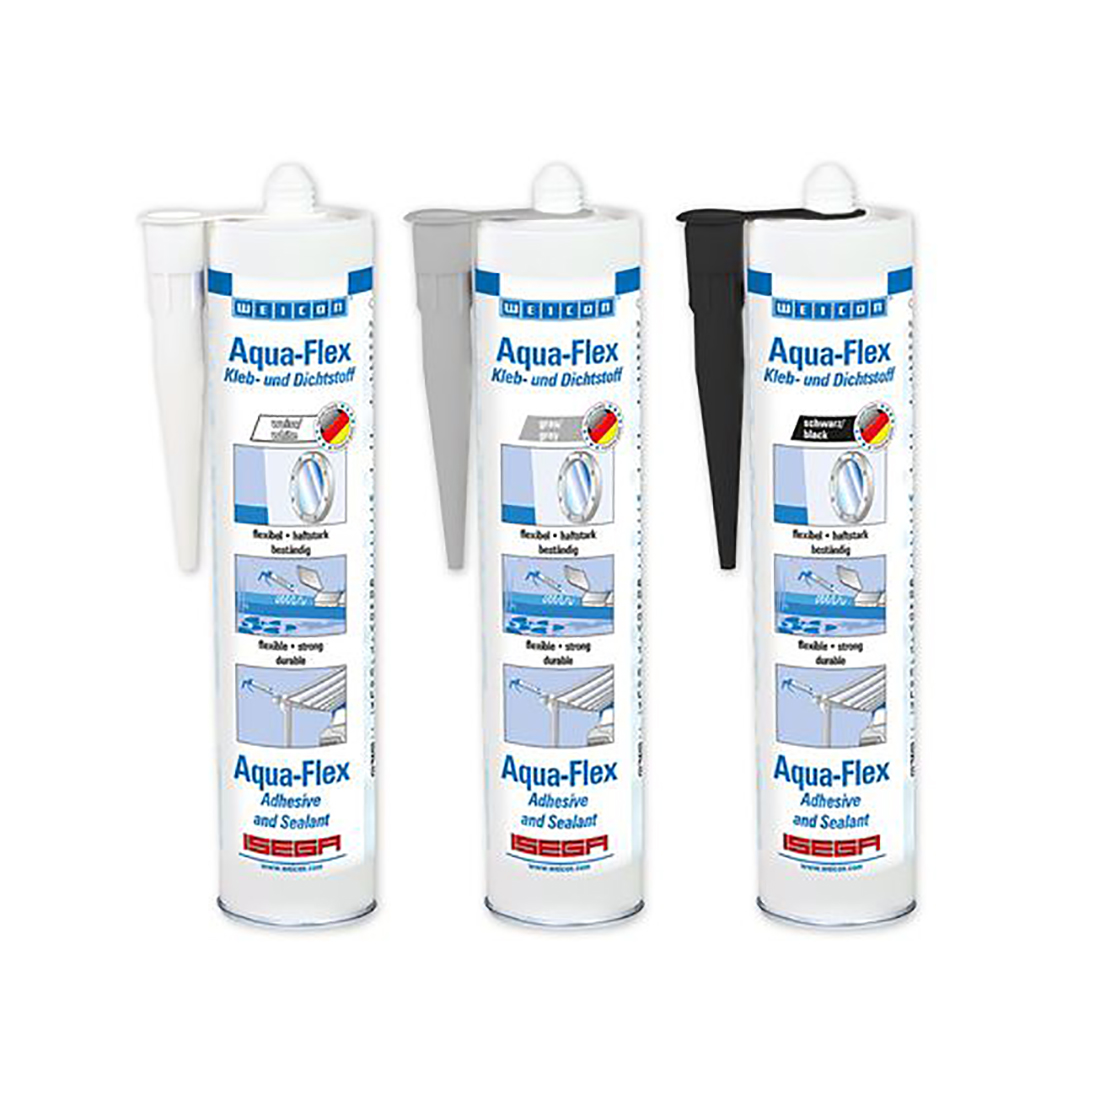 Aqua-Flex Underwater Adhesive Sealants Range